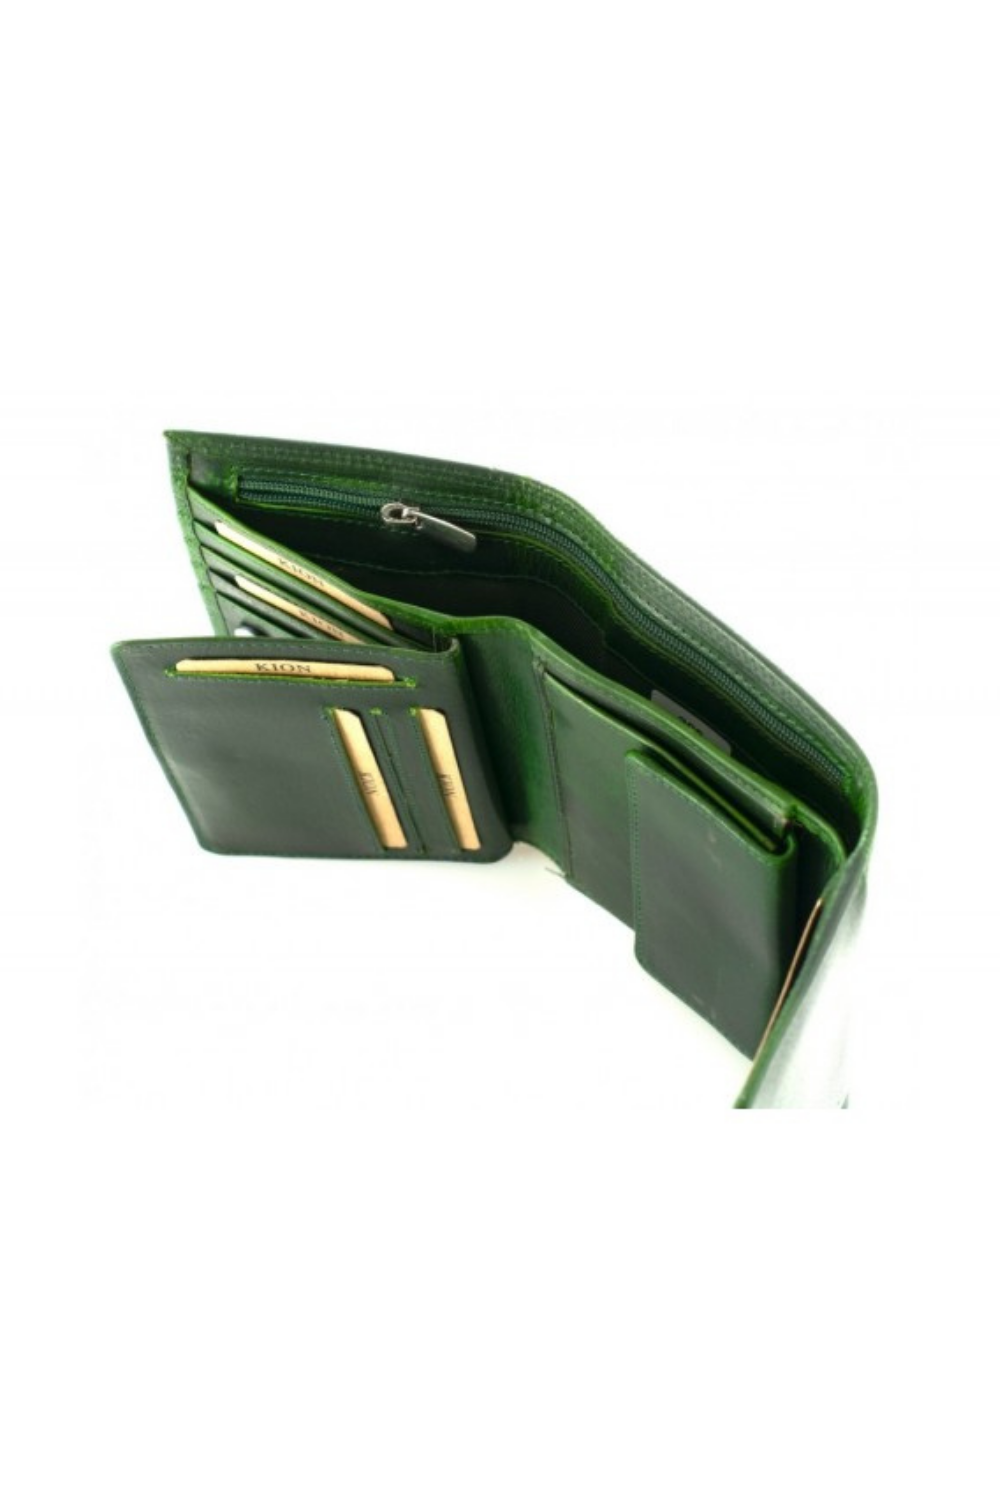 Πράσινο δερμάτινο πορτοφόλι κεριού.μεσσαίο μέγεθος